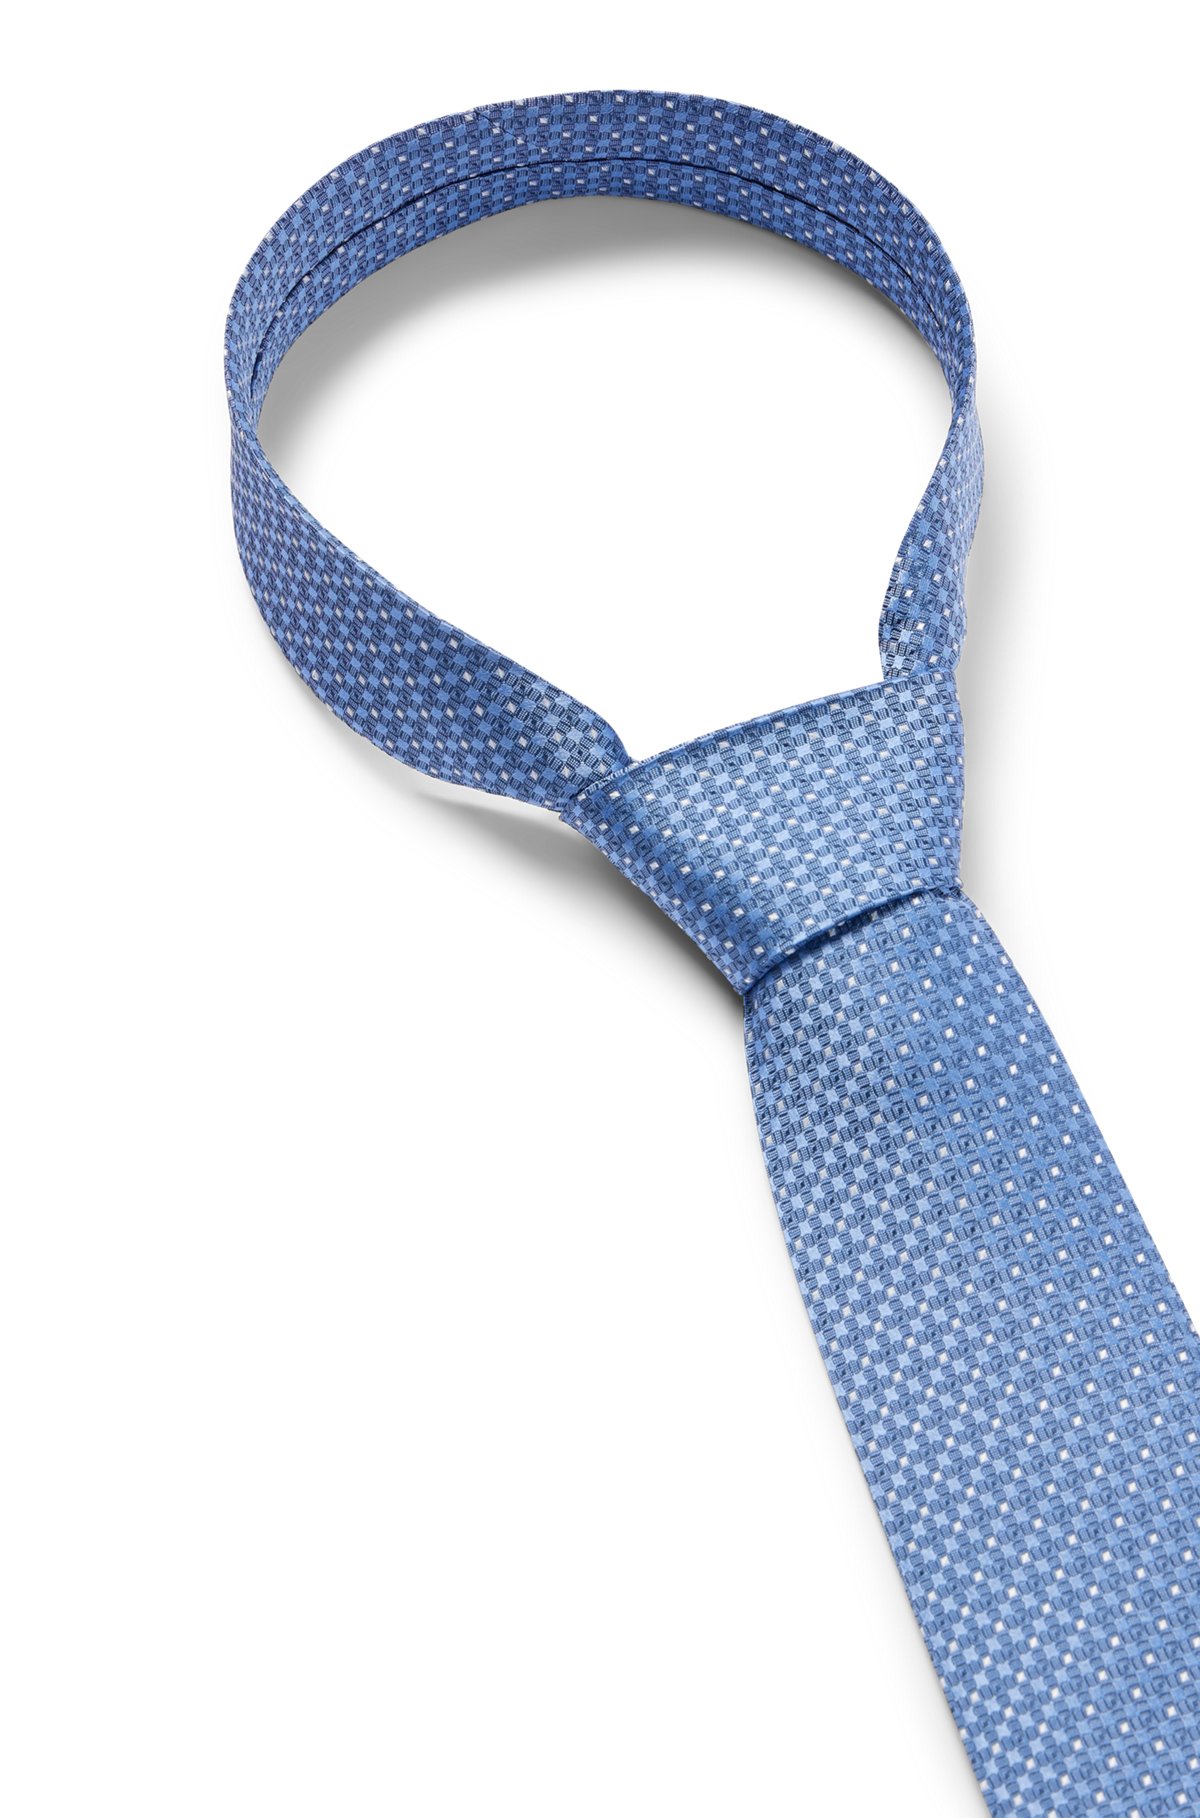 Cravate en soie pure avec micro motif en jacquard tissé, bleu clair